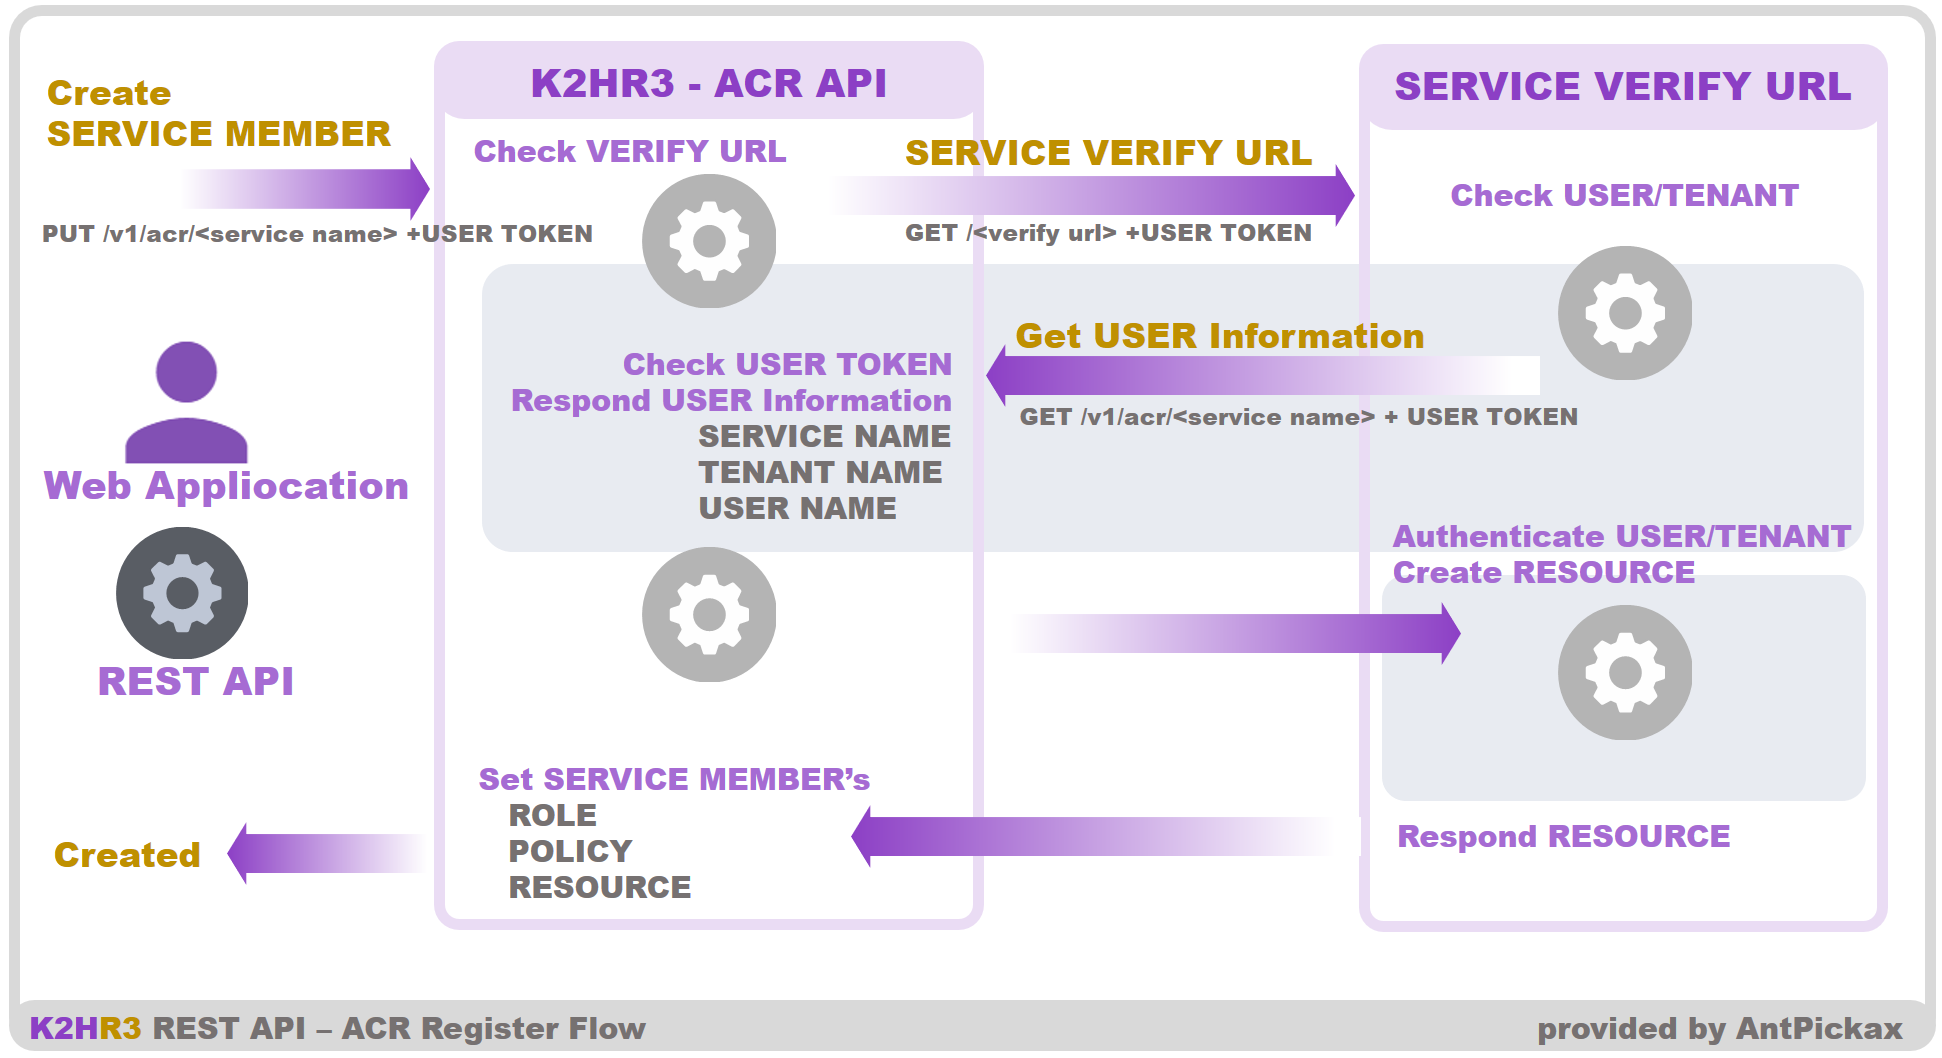 K2HR3 REST API - ACR Register Flow